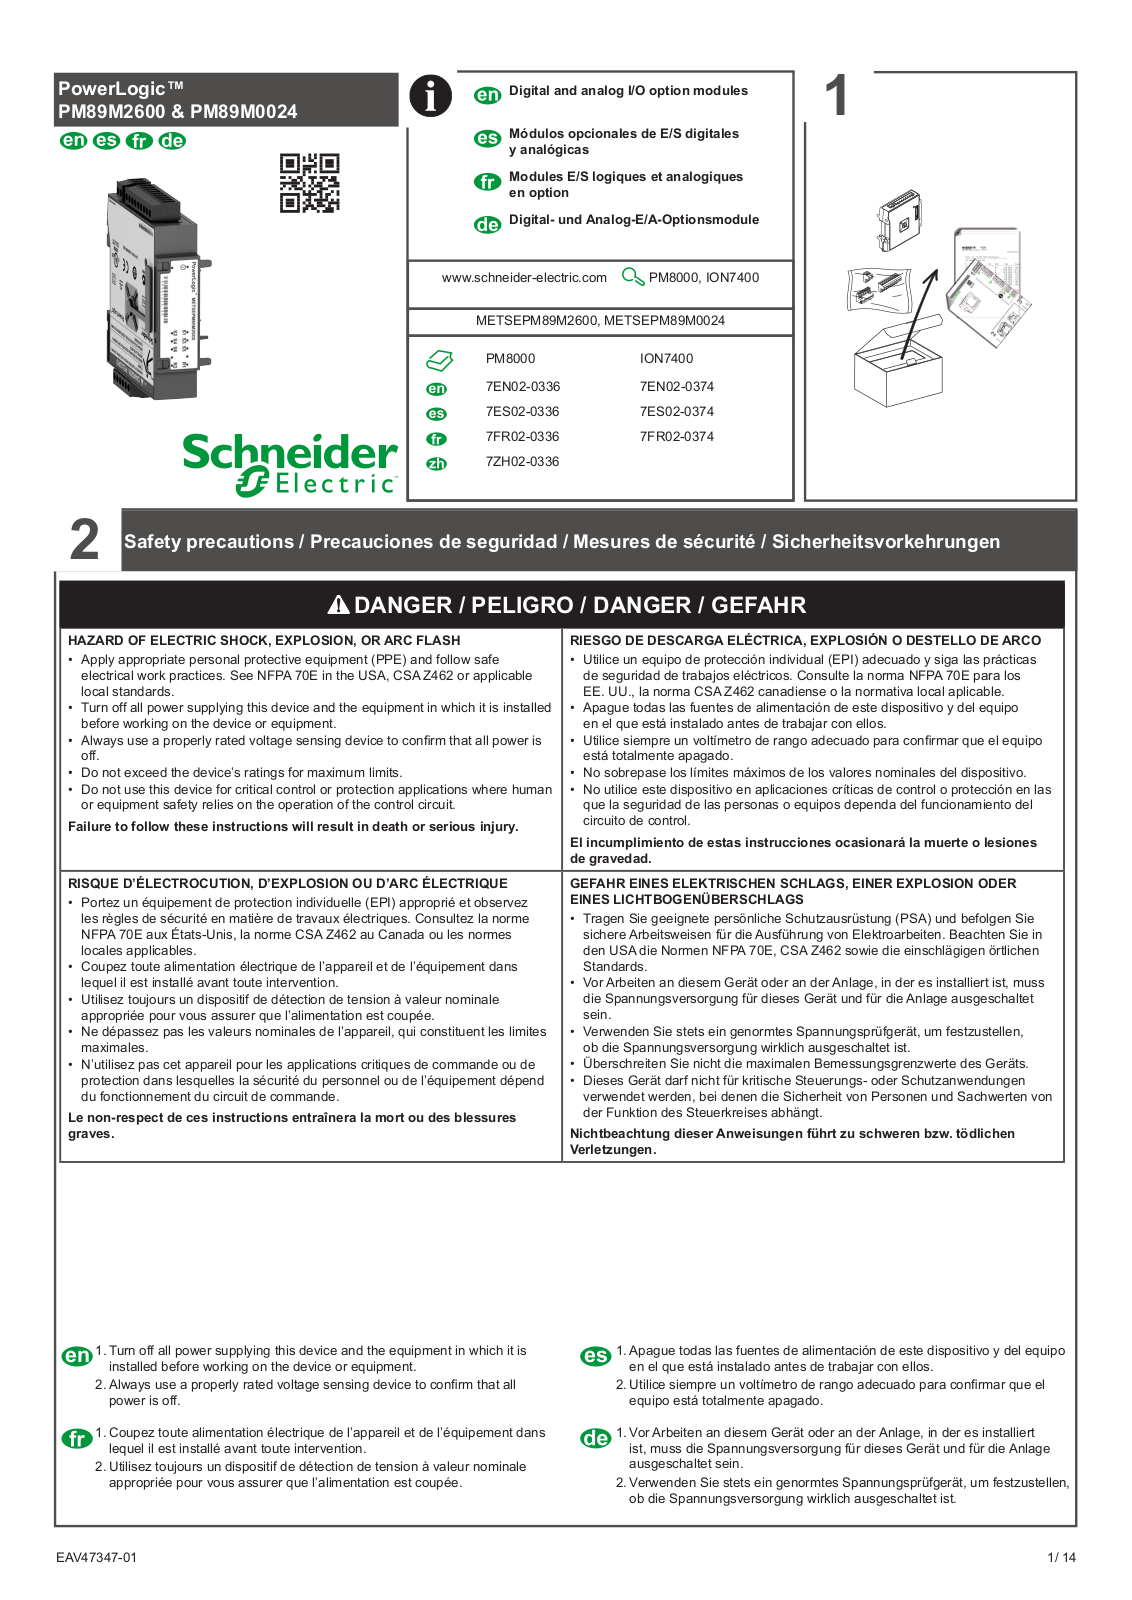 Schneider Electric PM89M0024, PM89M2600 User Manual